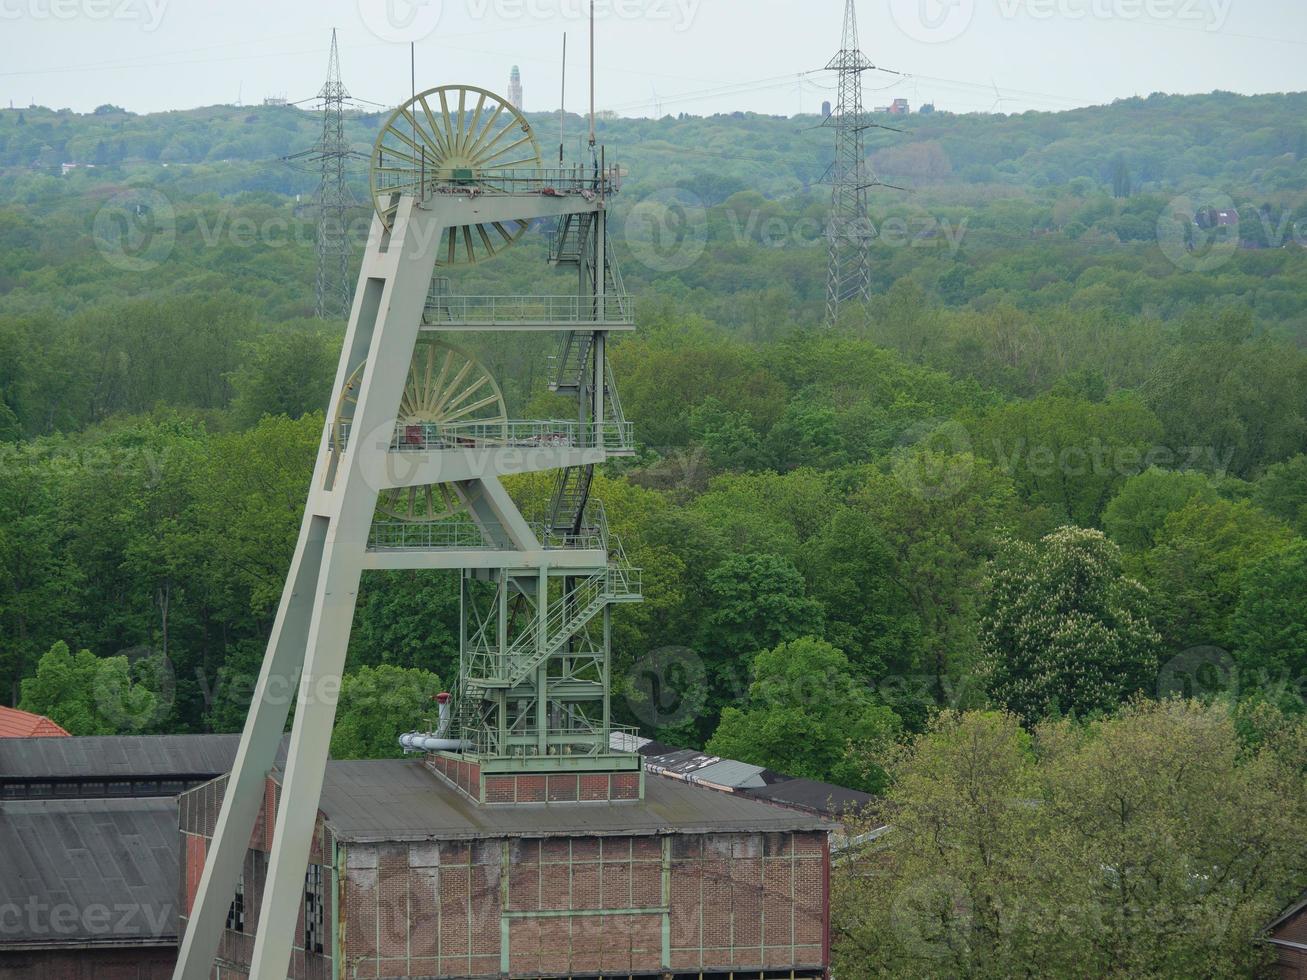 vecchia miniera di carbone nell'area della ruhr tedesca foto